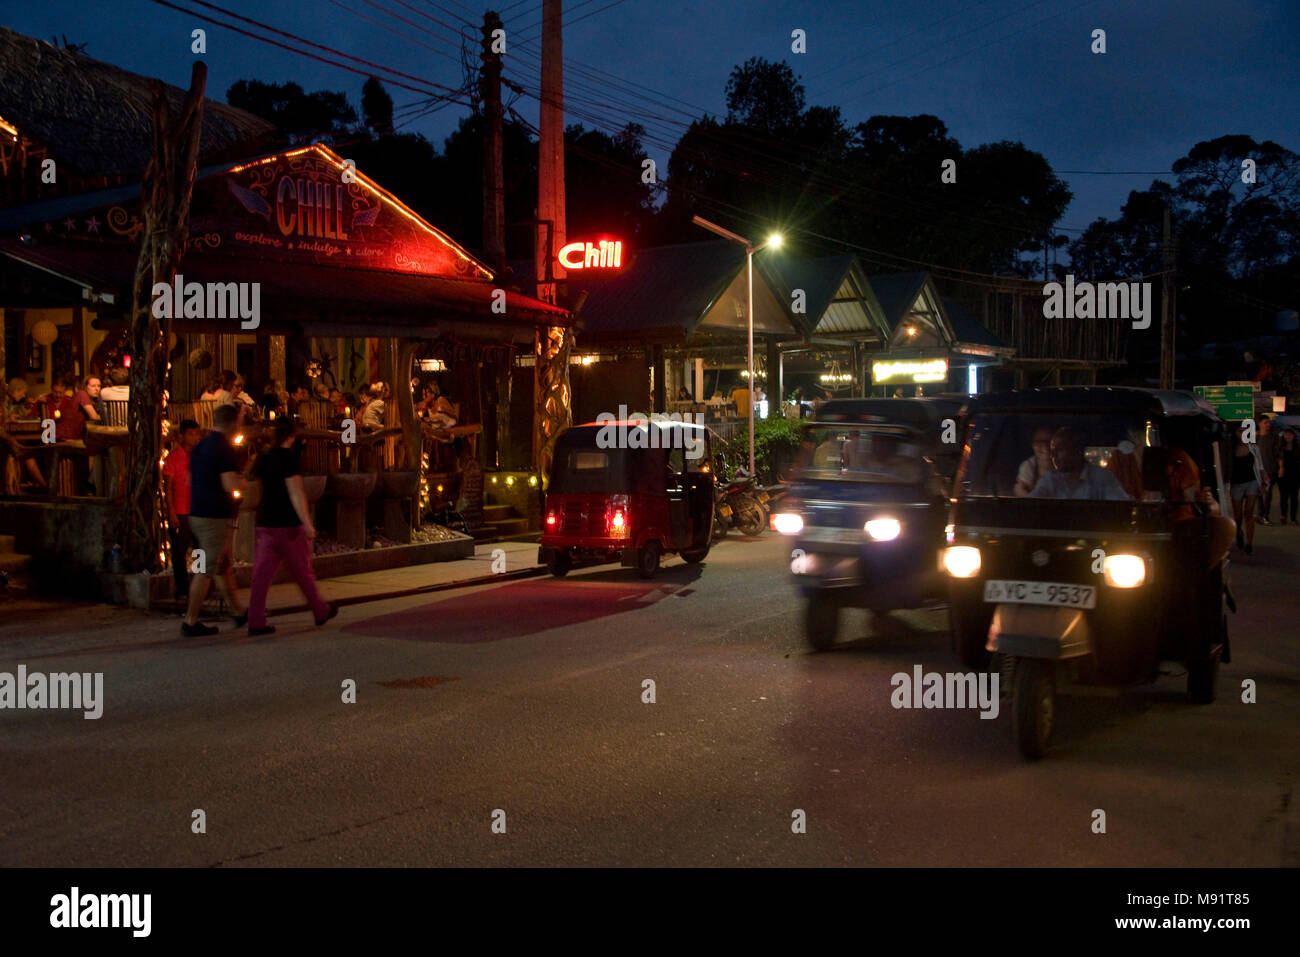 La calle principal en ella tarde noche con Tuk Tuks, restaurantes, bares, los turistas y lugareños. Velocidad de obturación lenta e ISO alto para el desenfoque de movimiento. Foto de stock